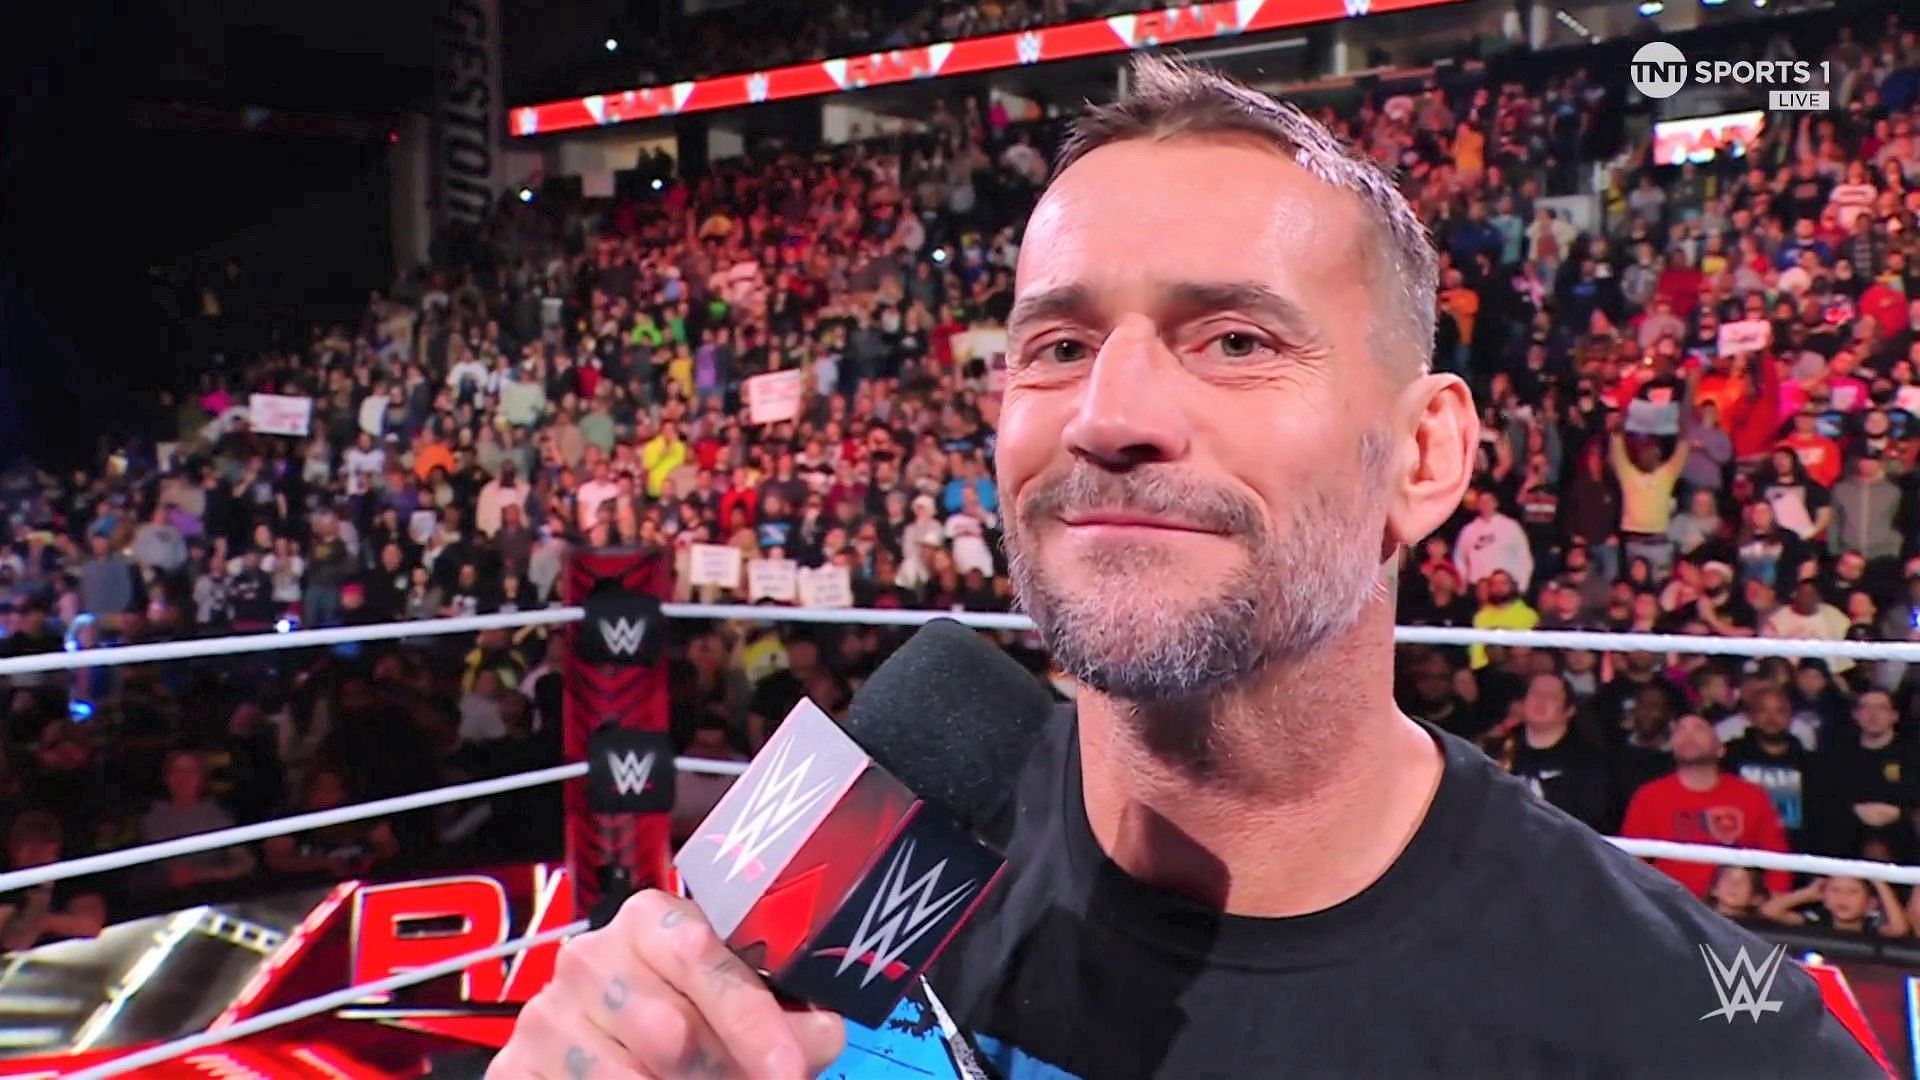 CM Punk cut a promo on WWE RAW